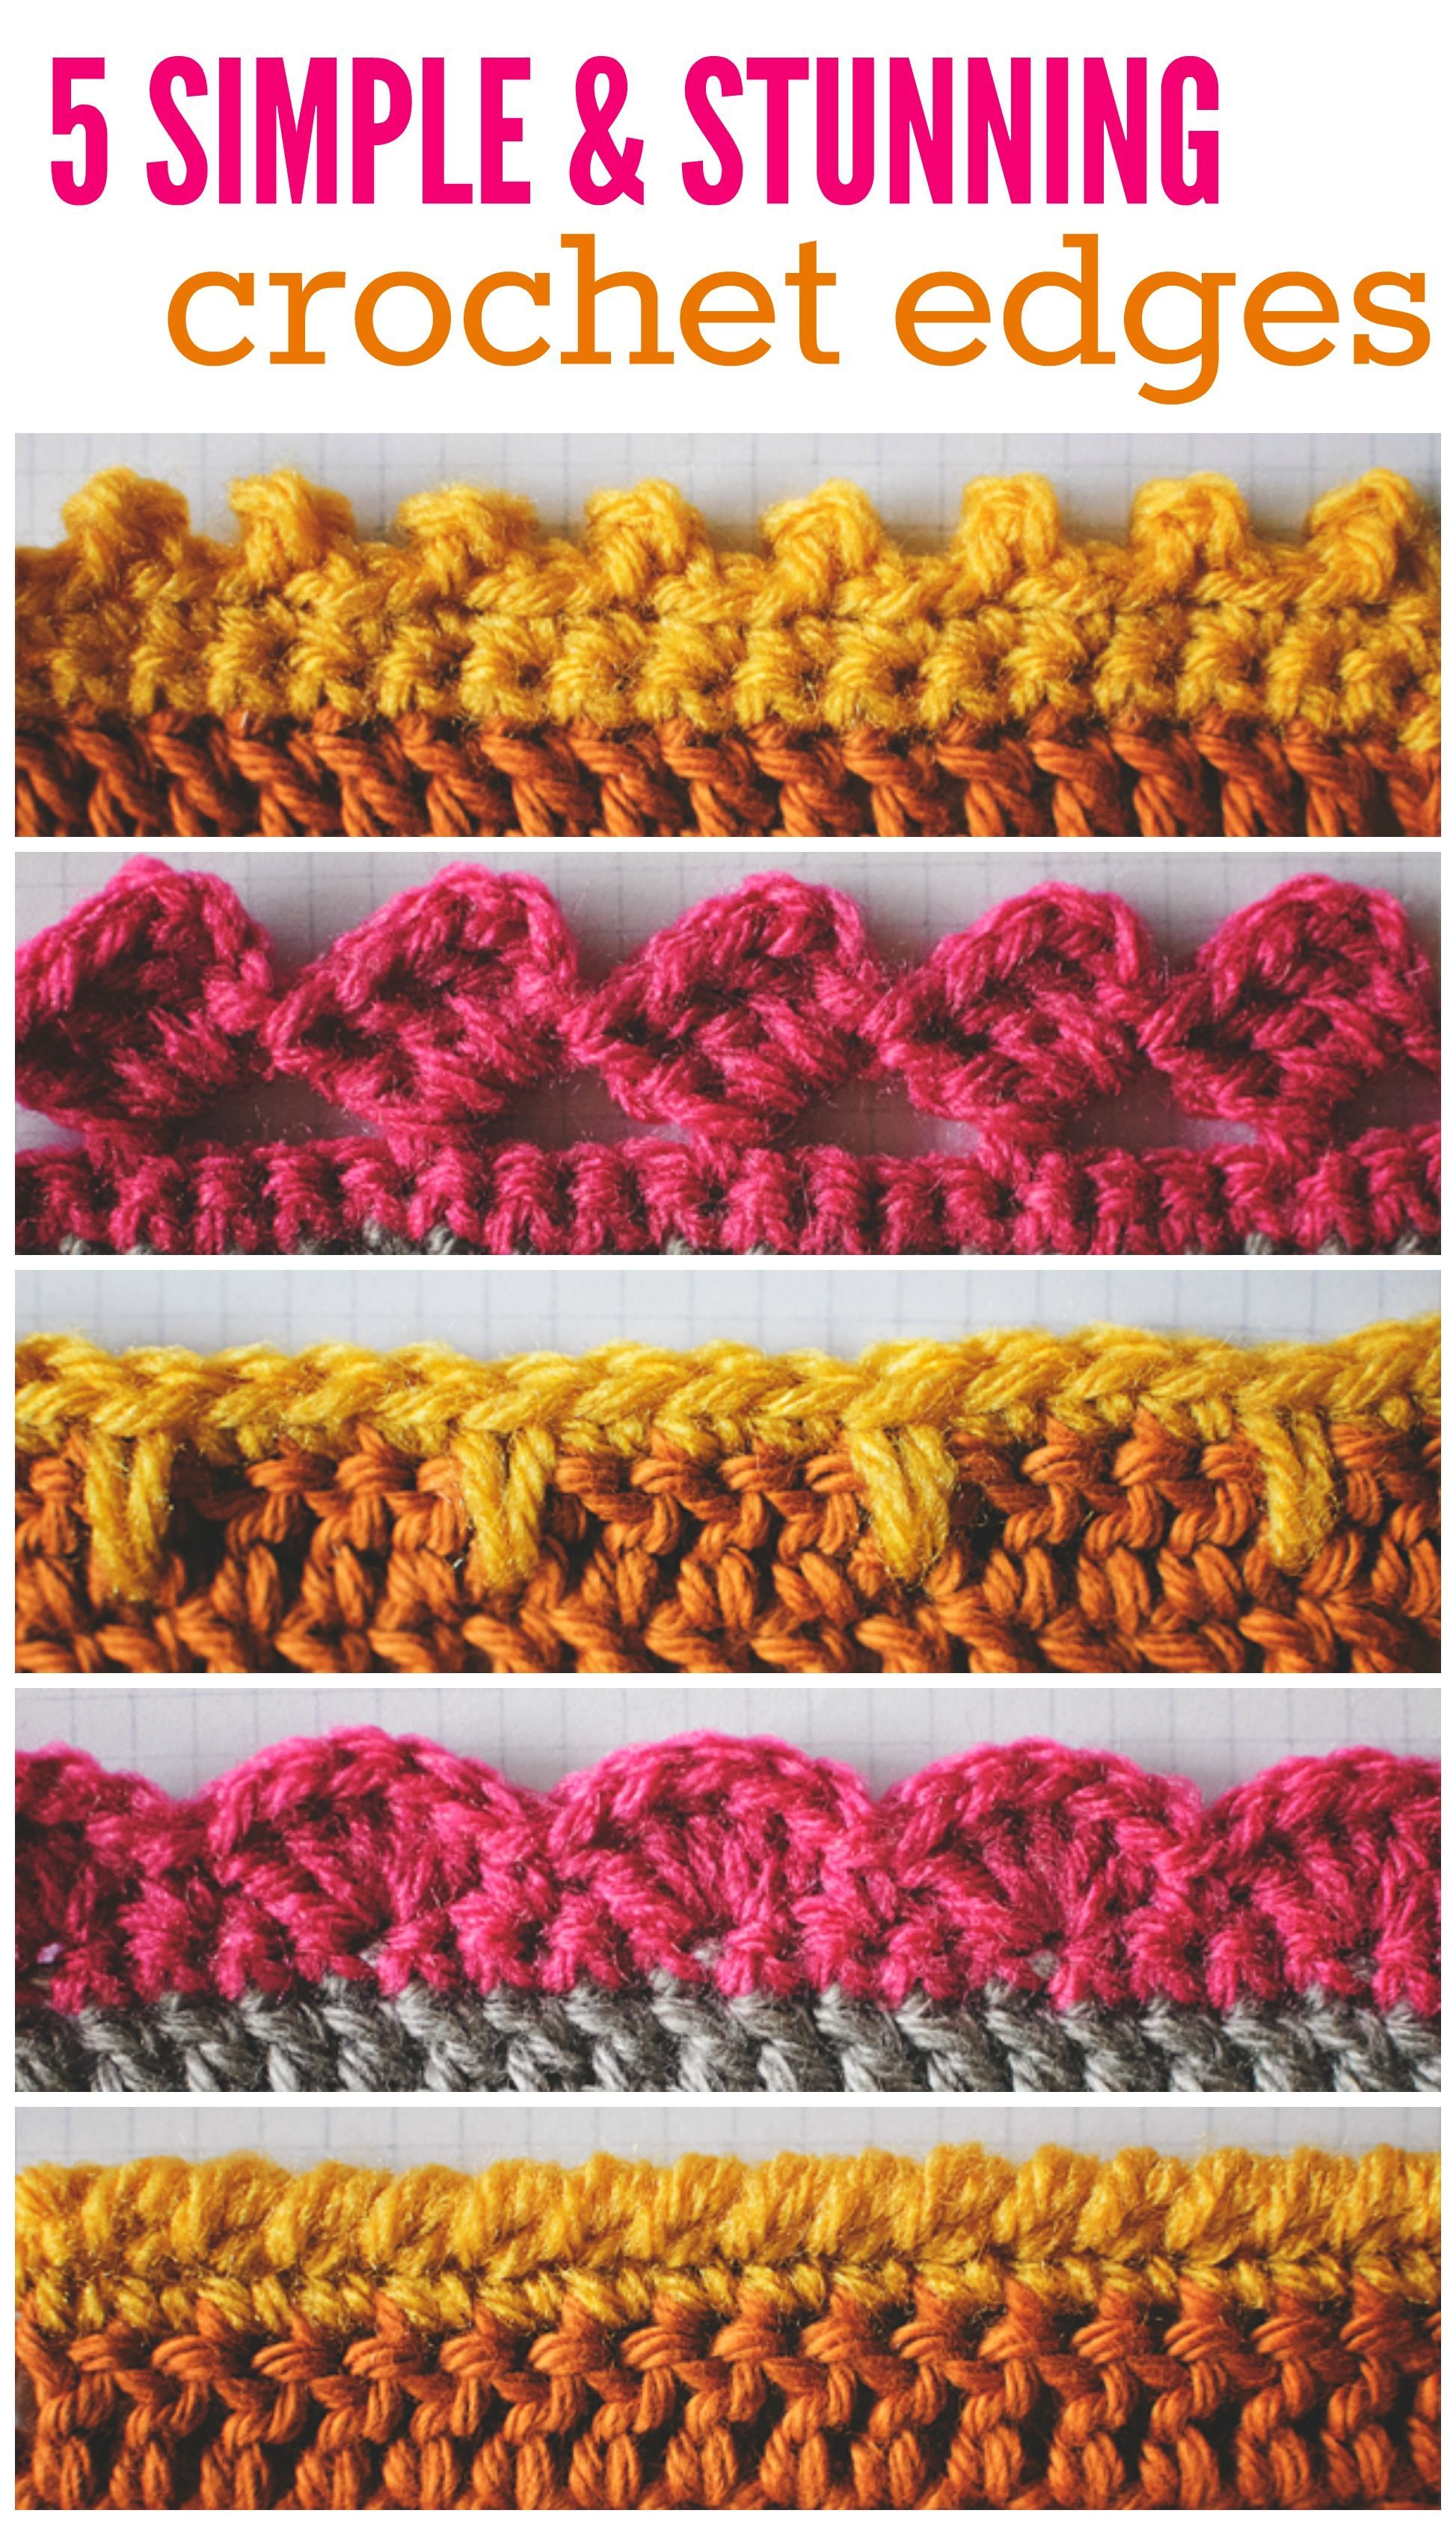 Crochet Edge Pinterest